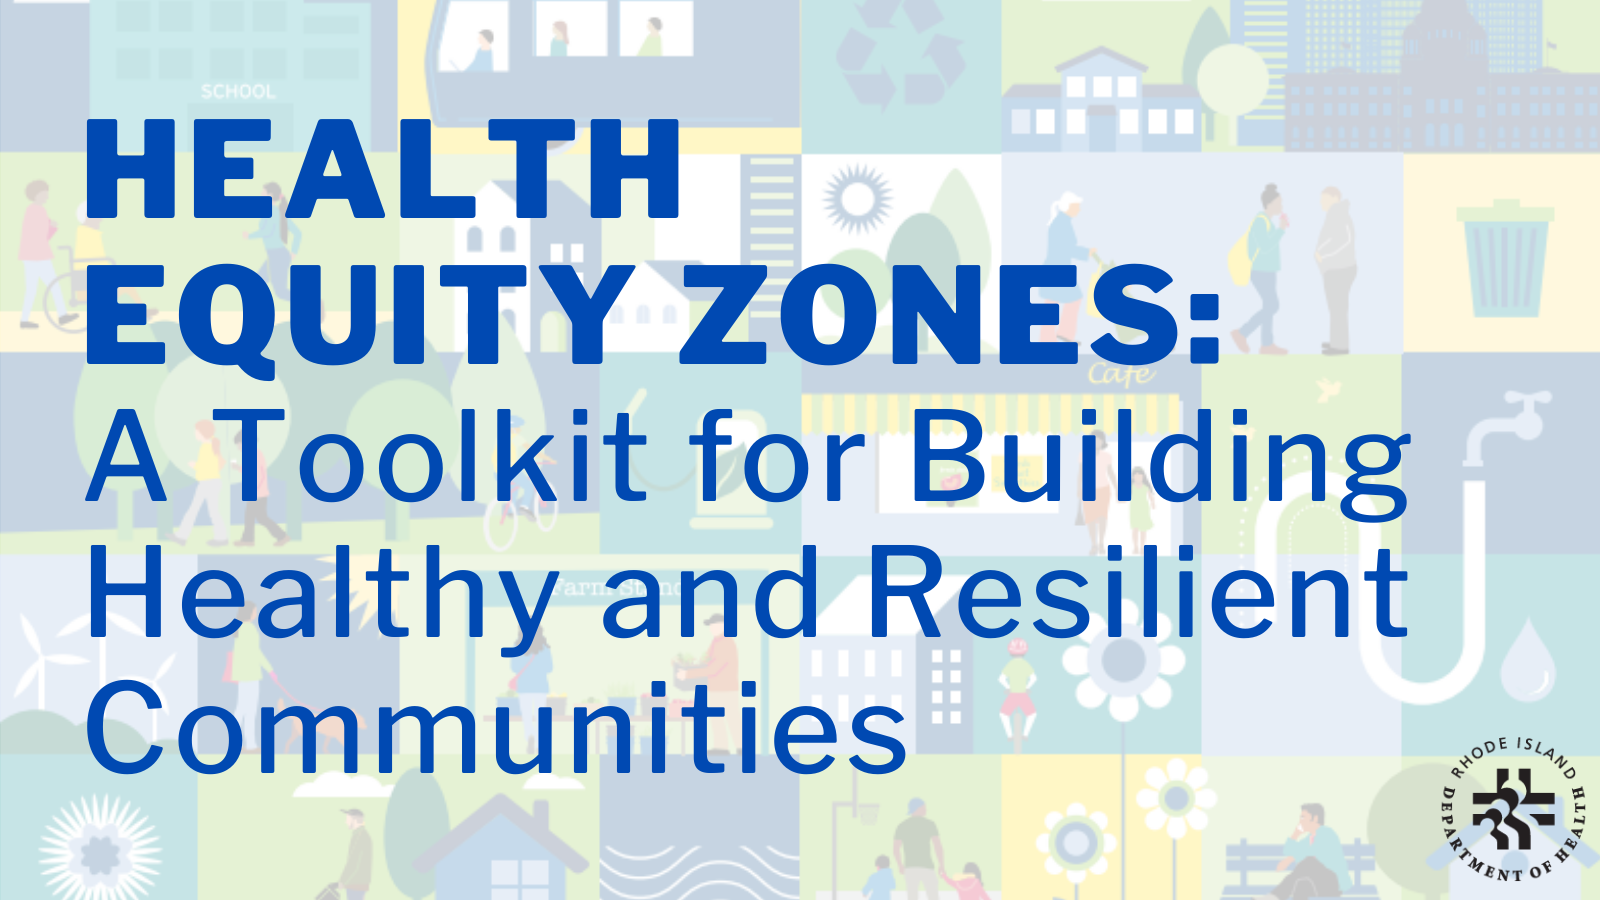 Health Equity Zones